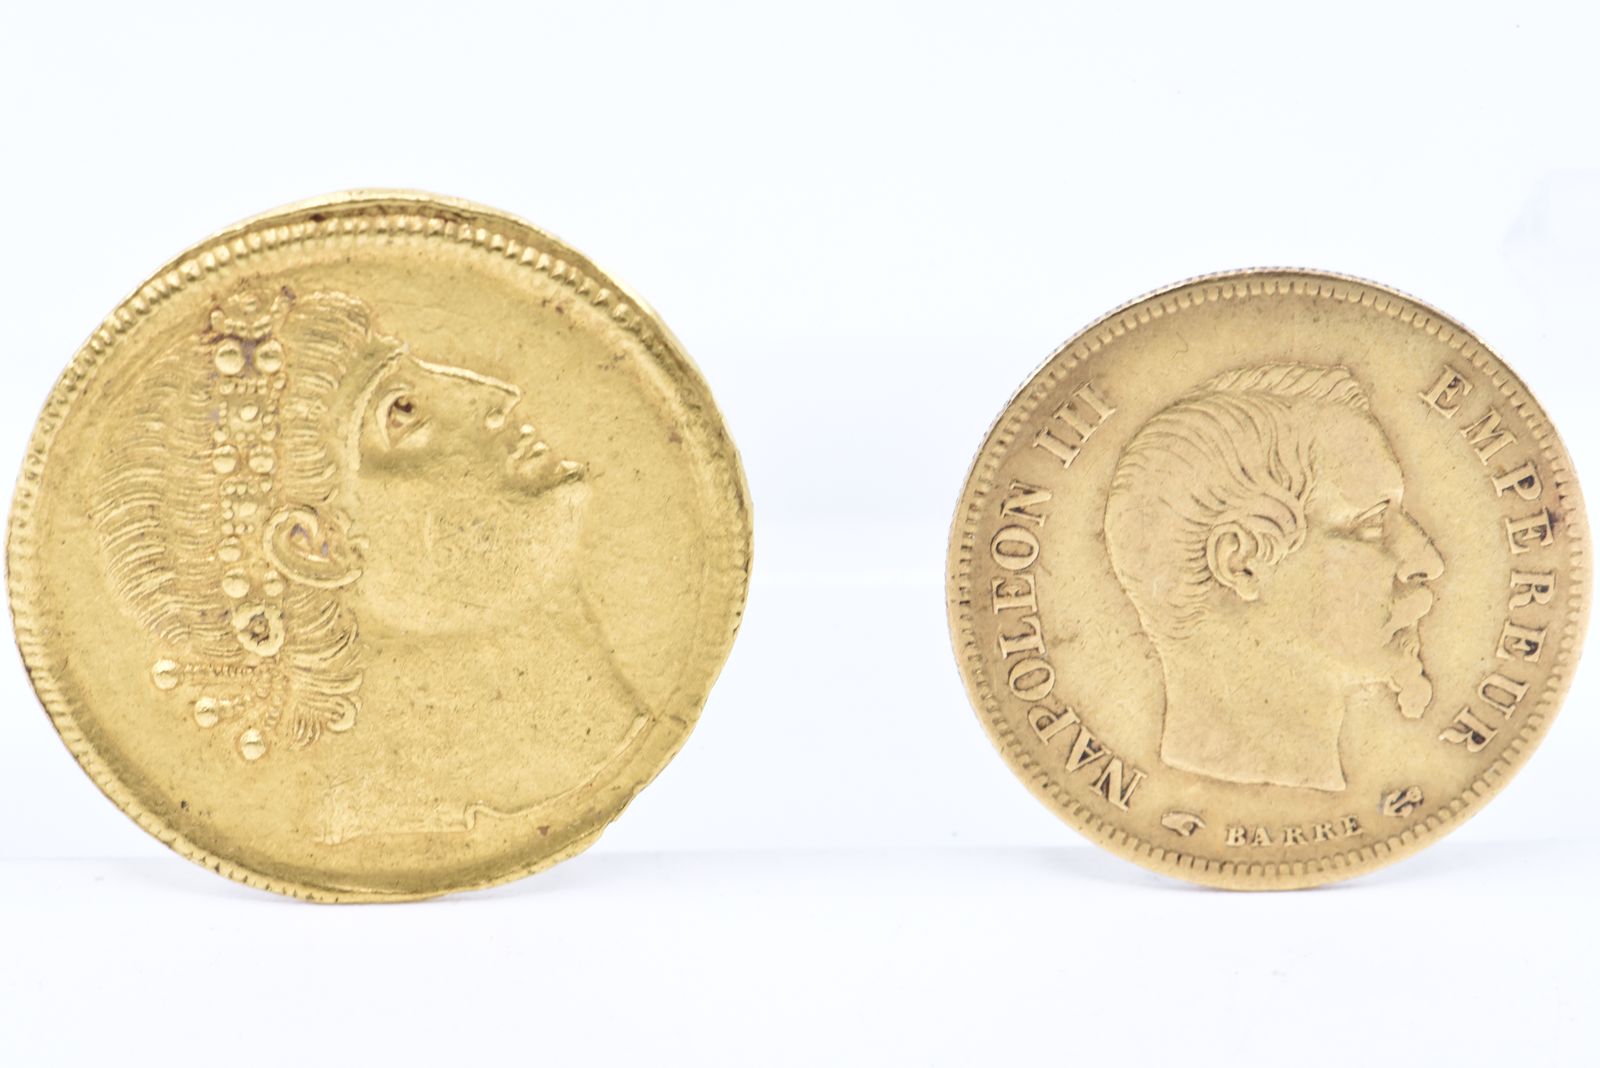 Lille : Une collection unique de pièces de monnaie mise aux enchères